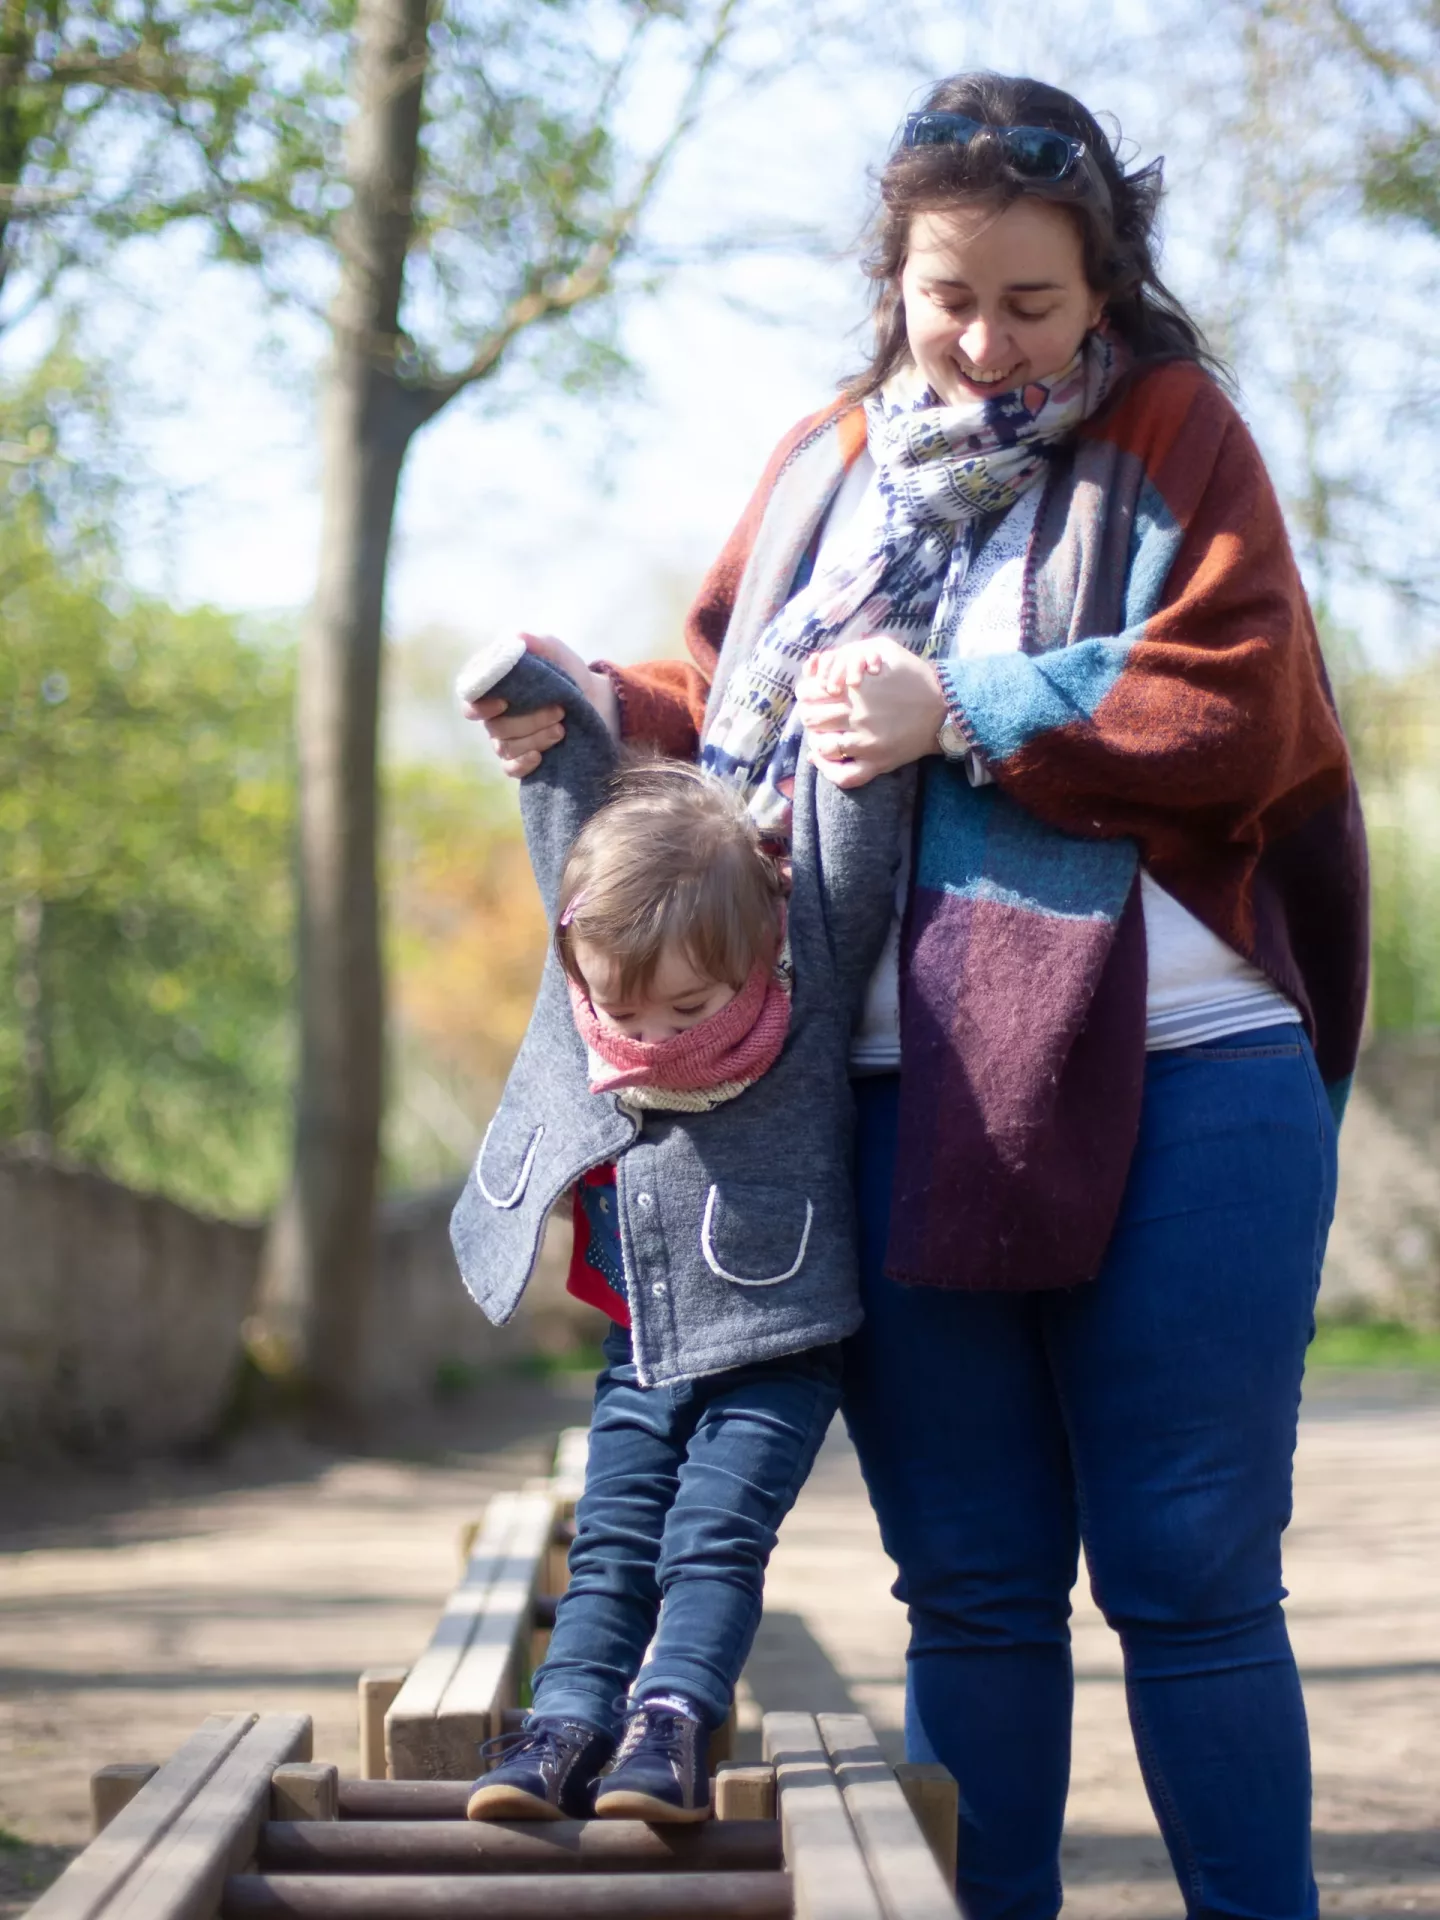 Un photographe de famille à Beziers photographie de façon lifestyle une mère et sa fille jouant dans un parc